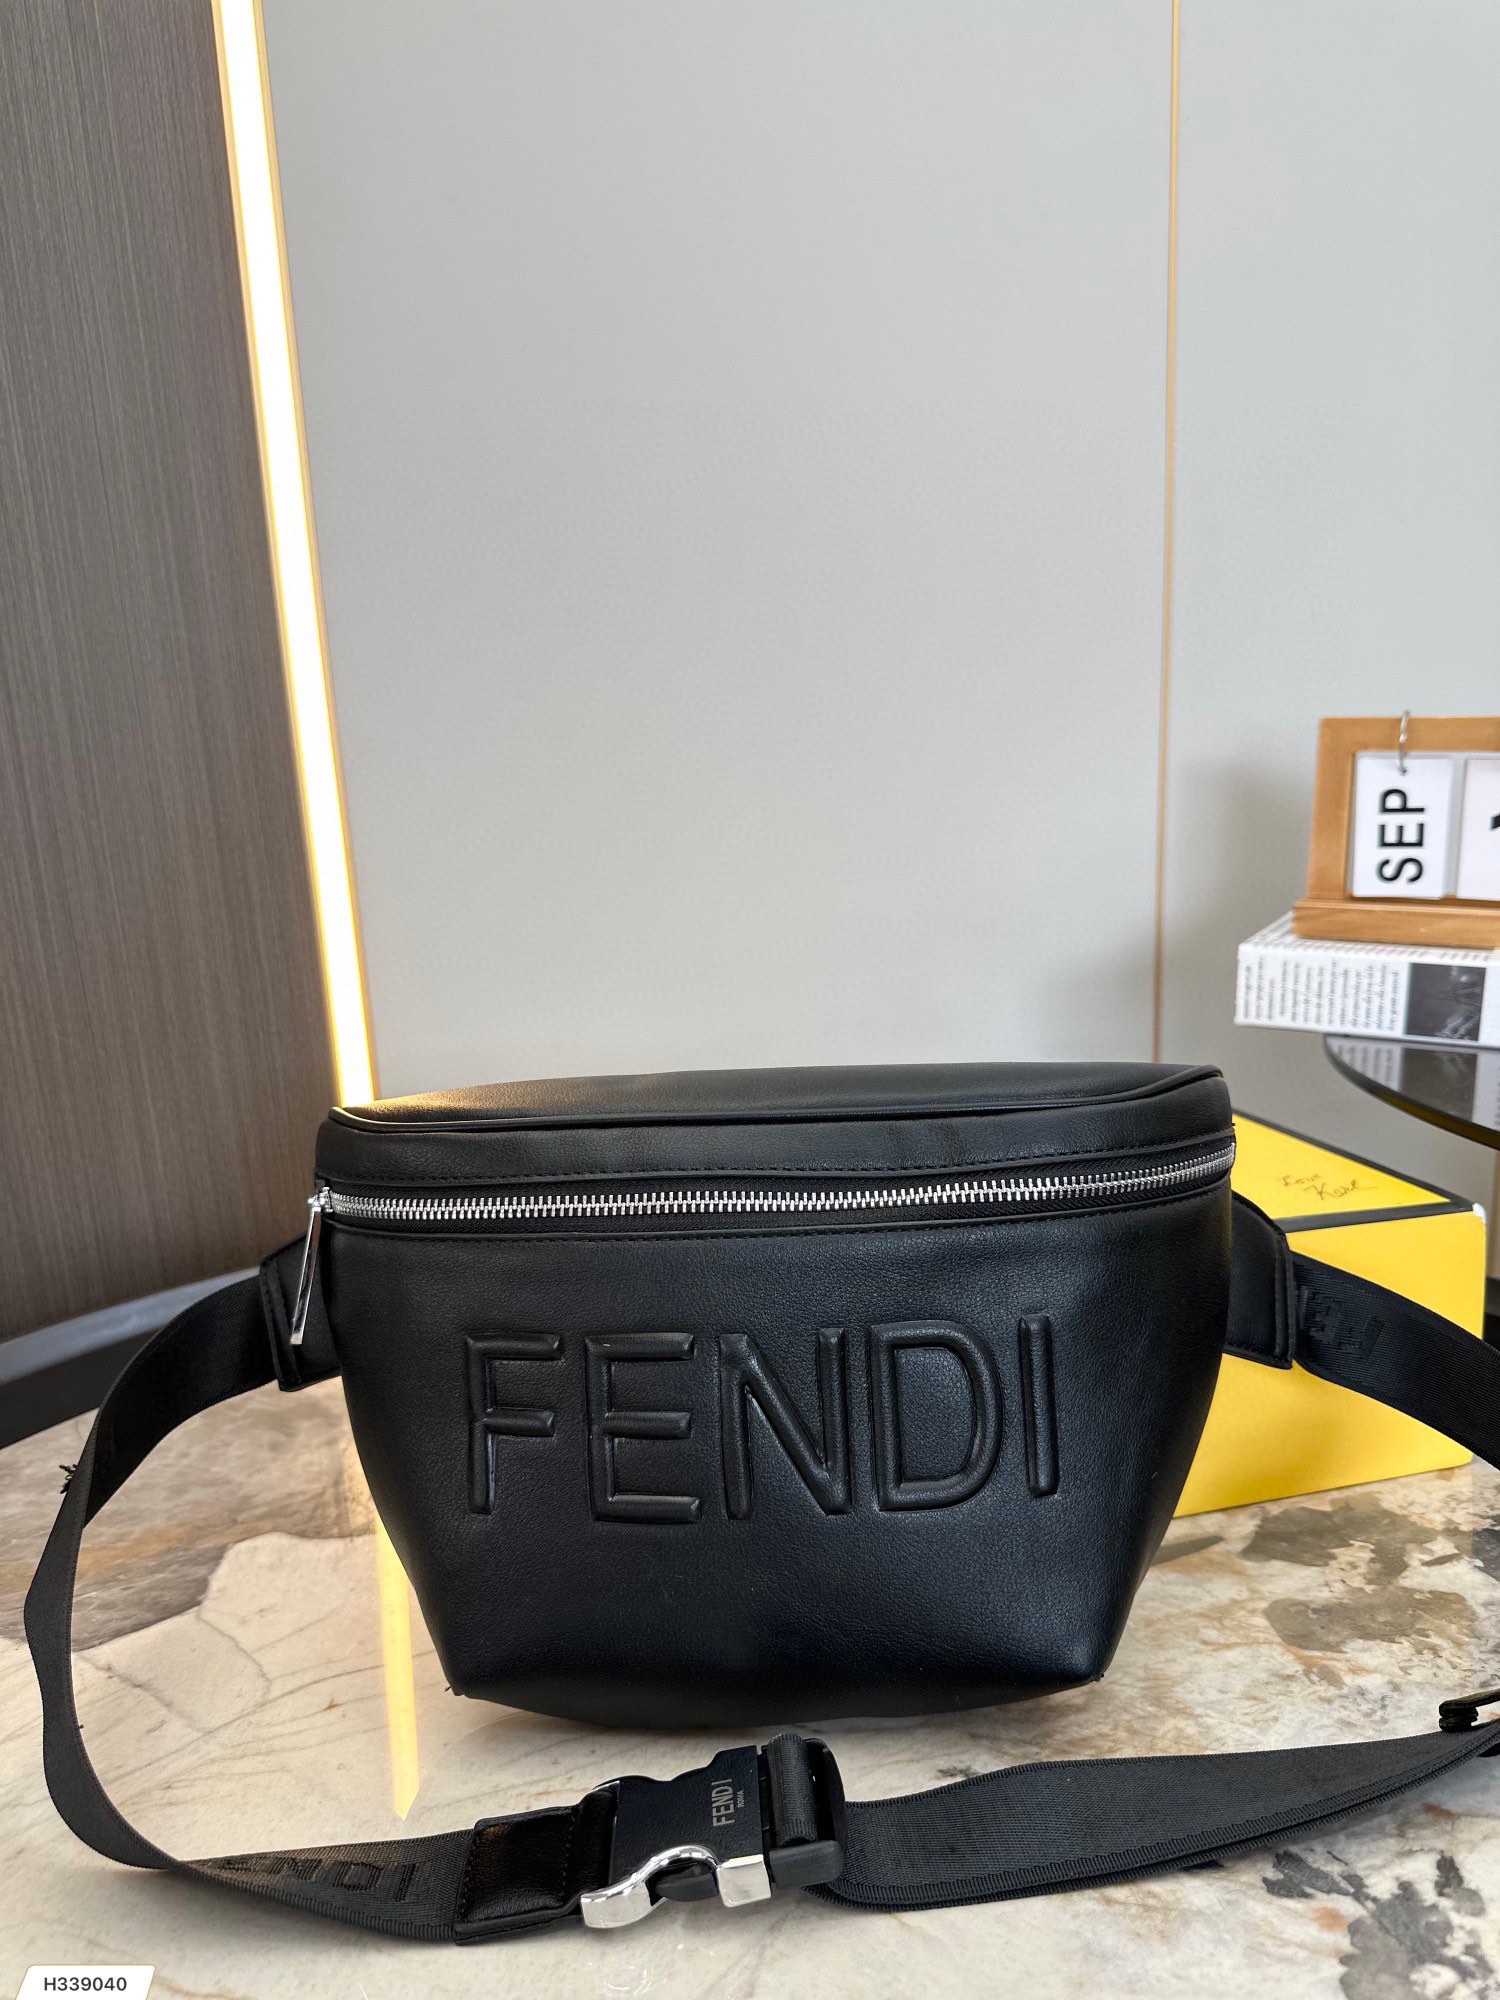 Fendi Belt Bags & Fanny Packs